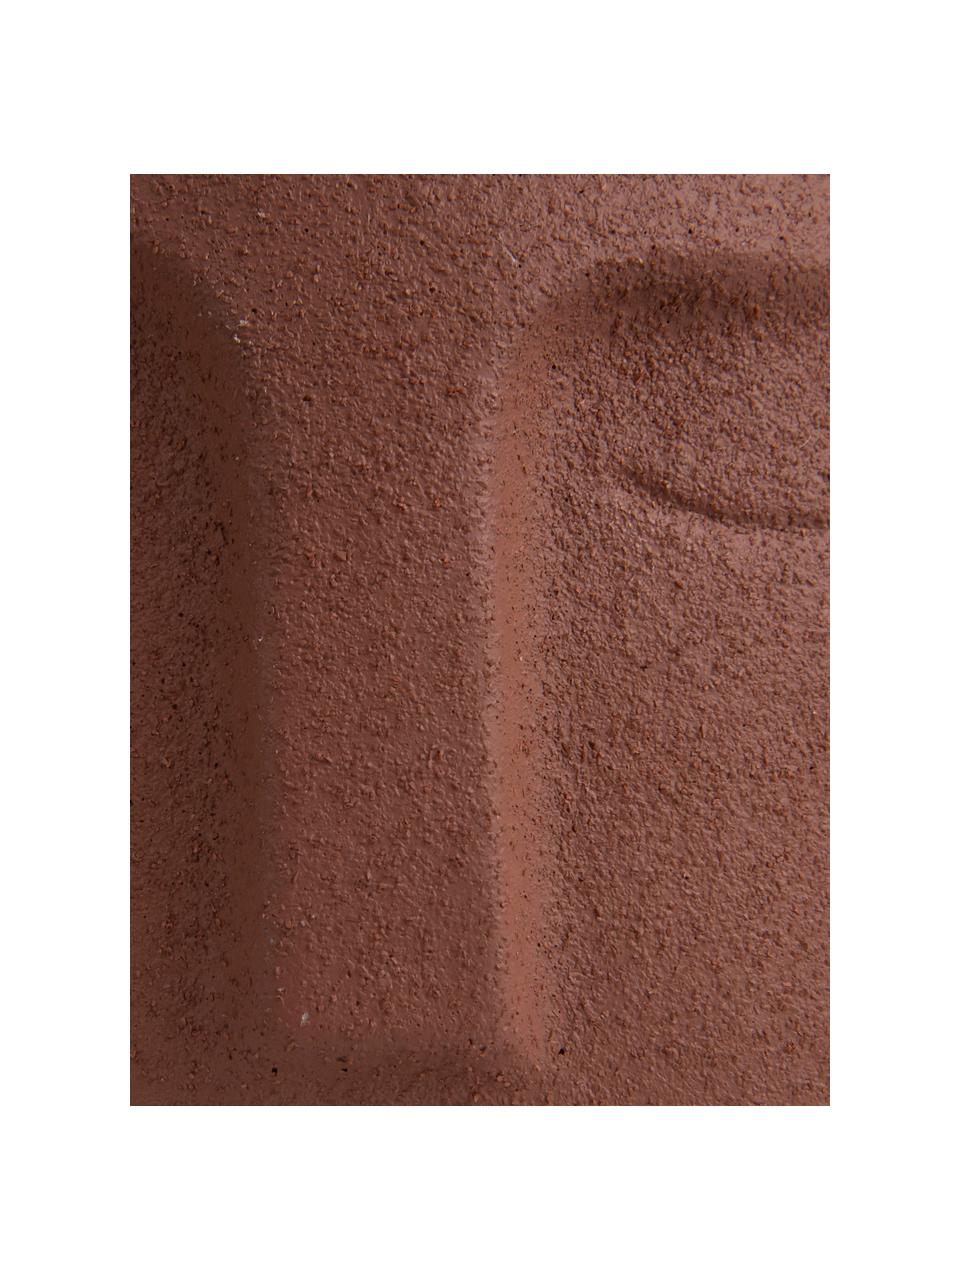 Malý betonový obal na květináč Face, Keramika, Hnědá, Ø 12,5 x V 14 cm